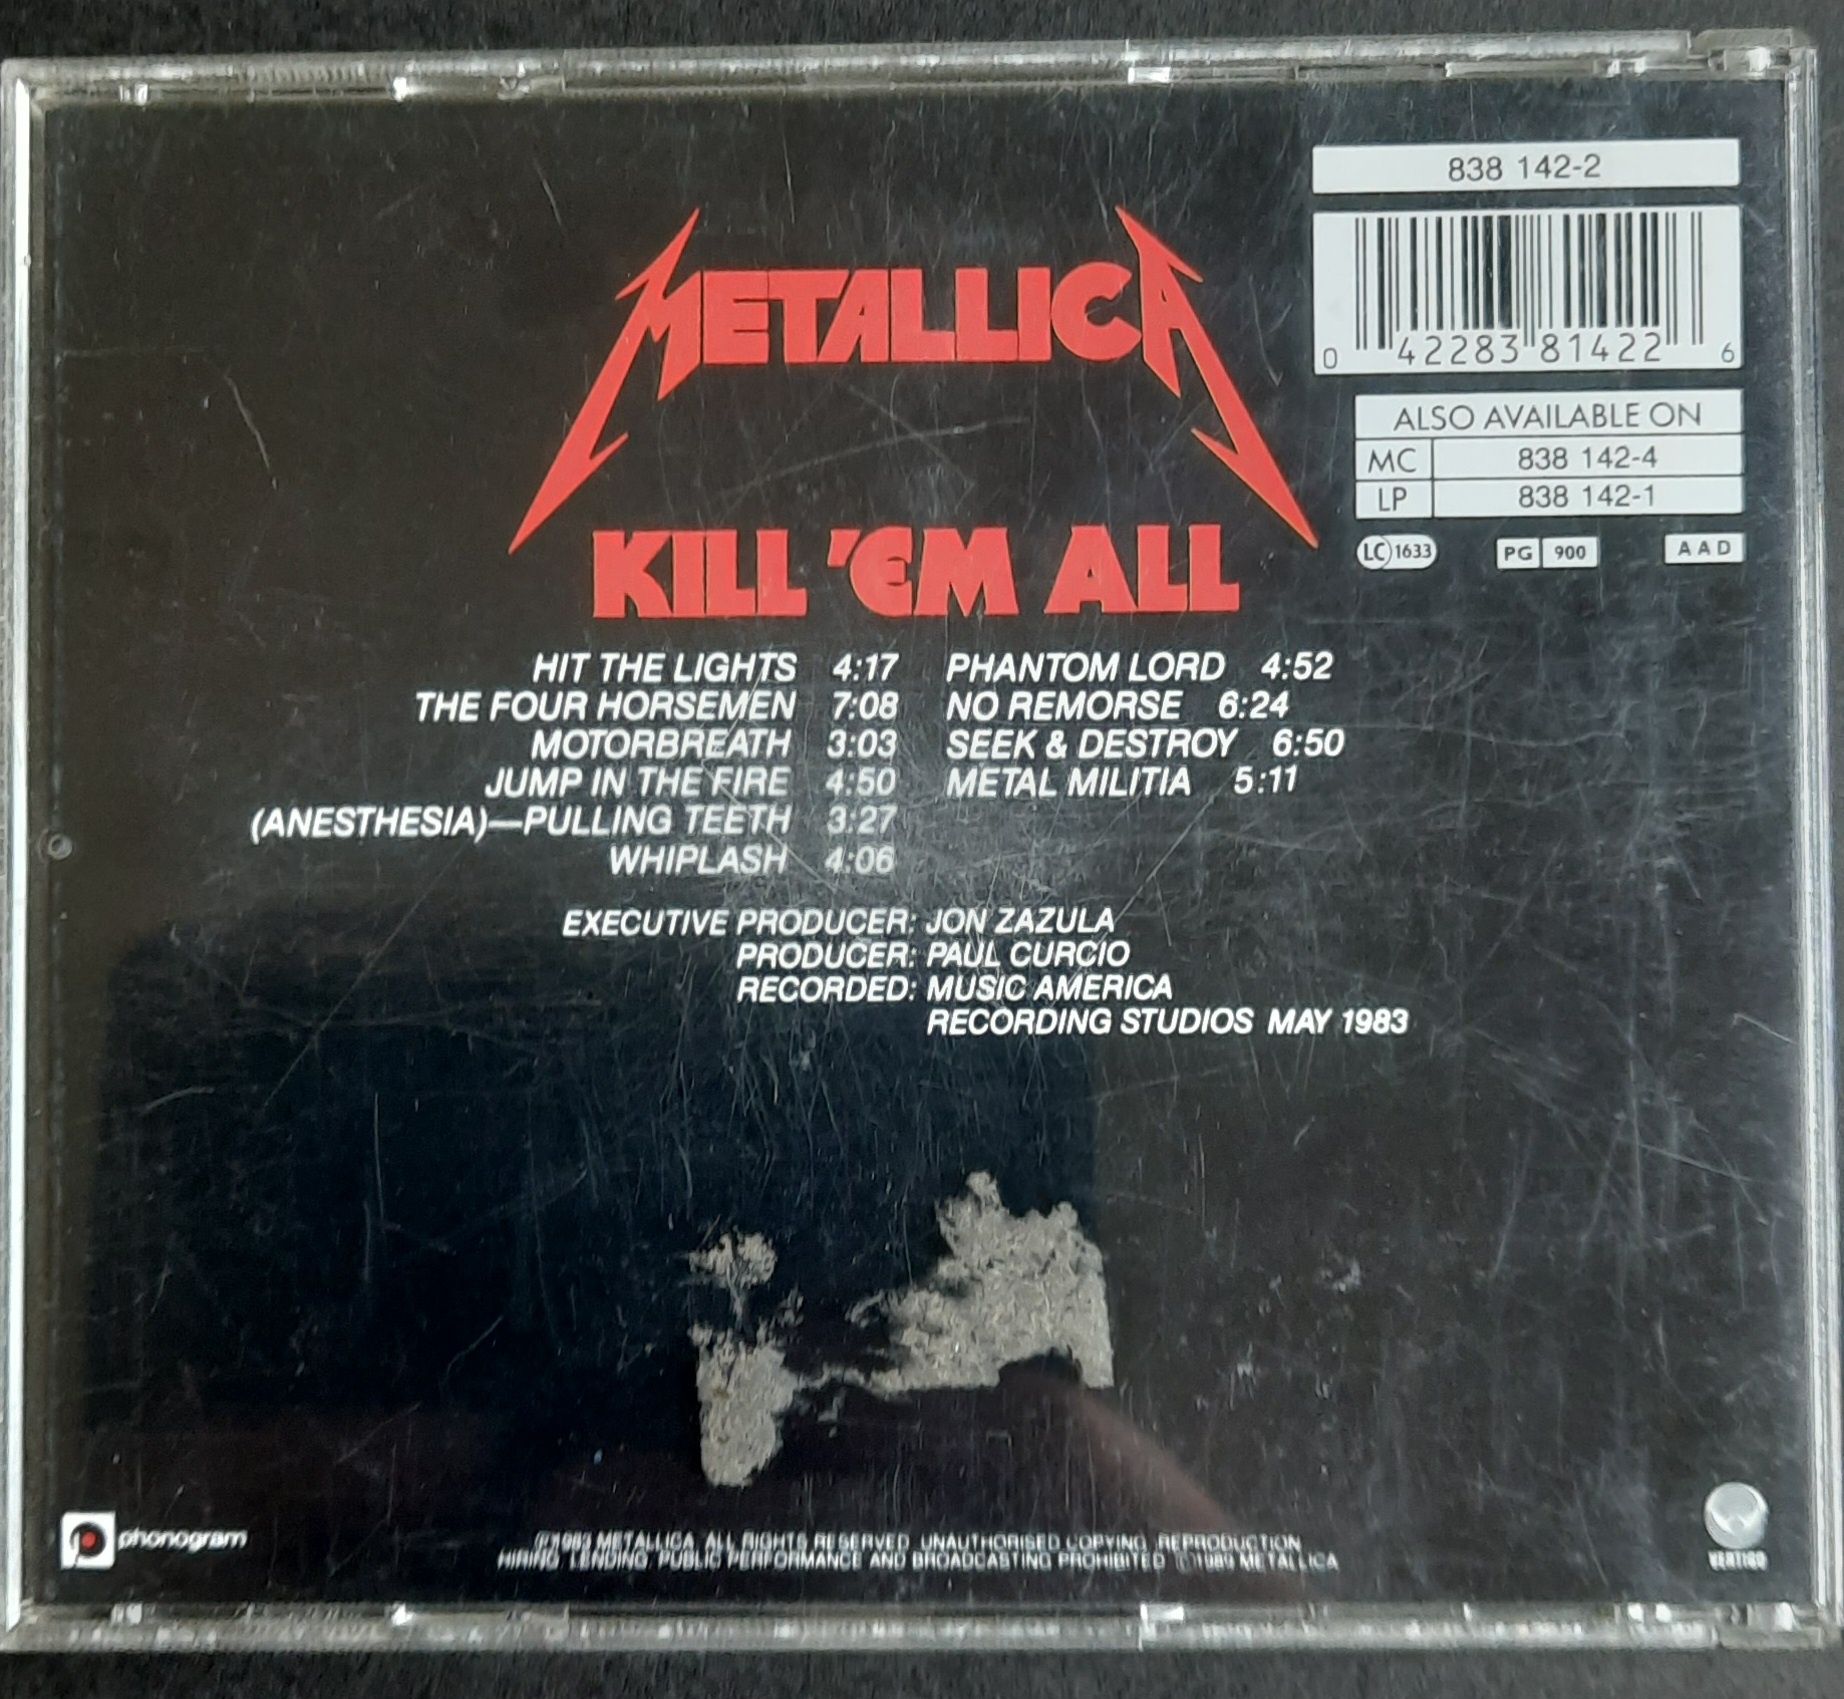 Metallica - Kill'em all cd.